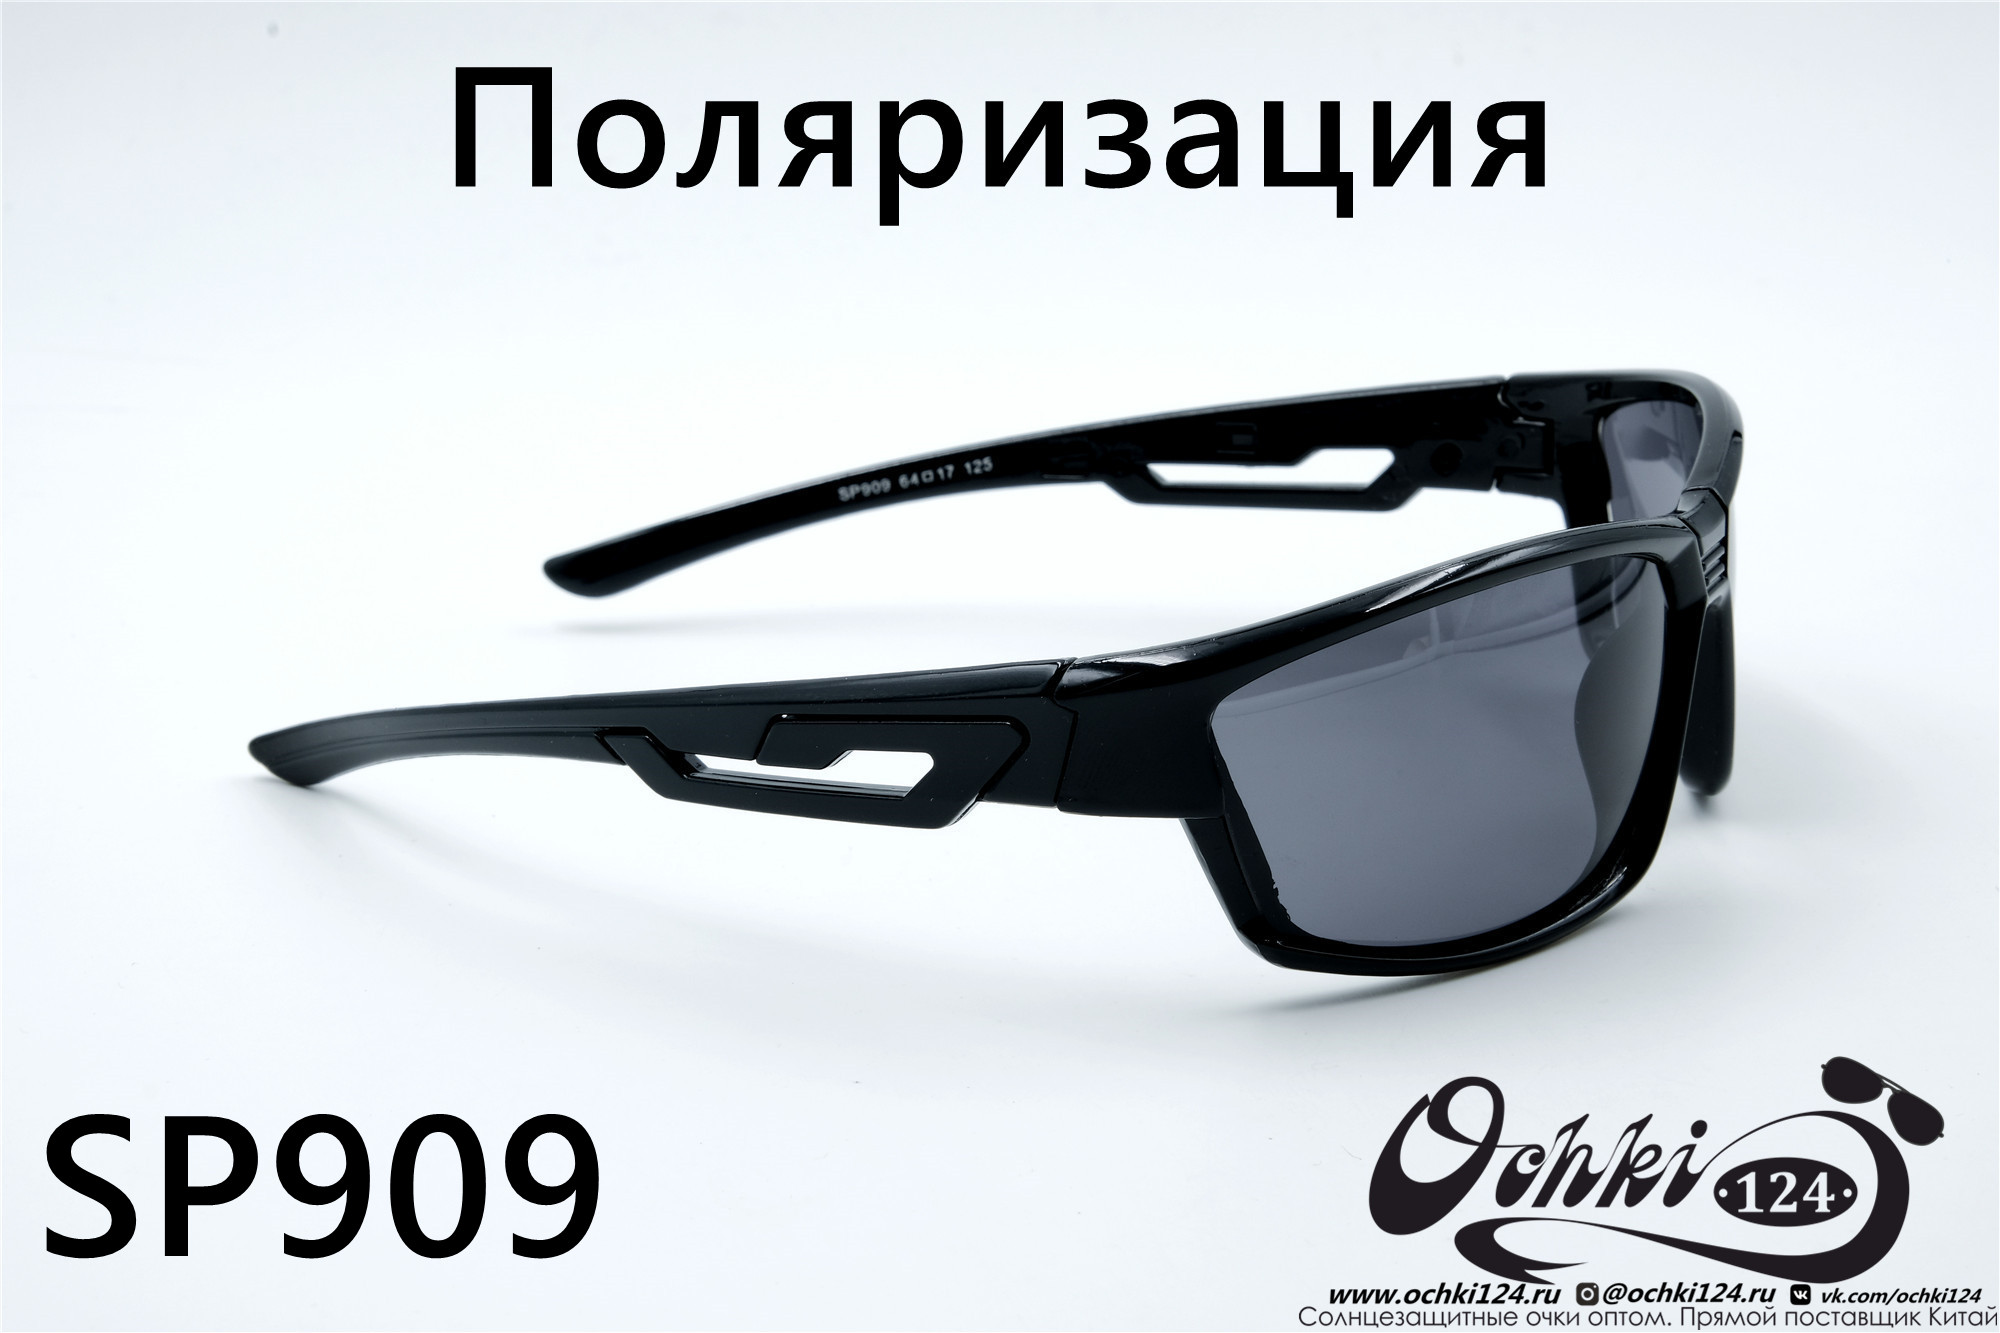  Солнцезащитные очки картинка 2022 Мужские Поляризованные Спорт Materice SP909-1 